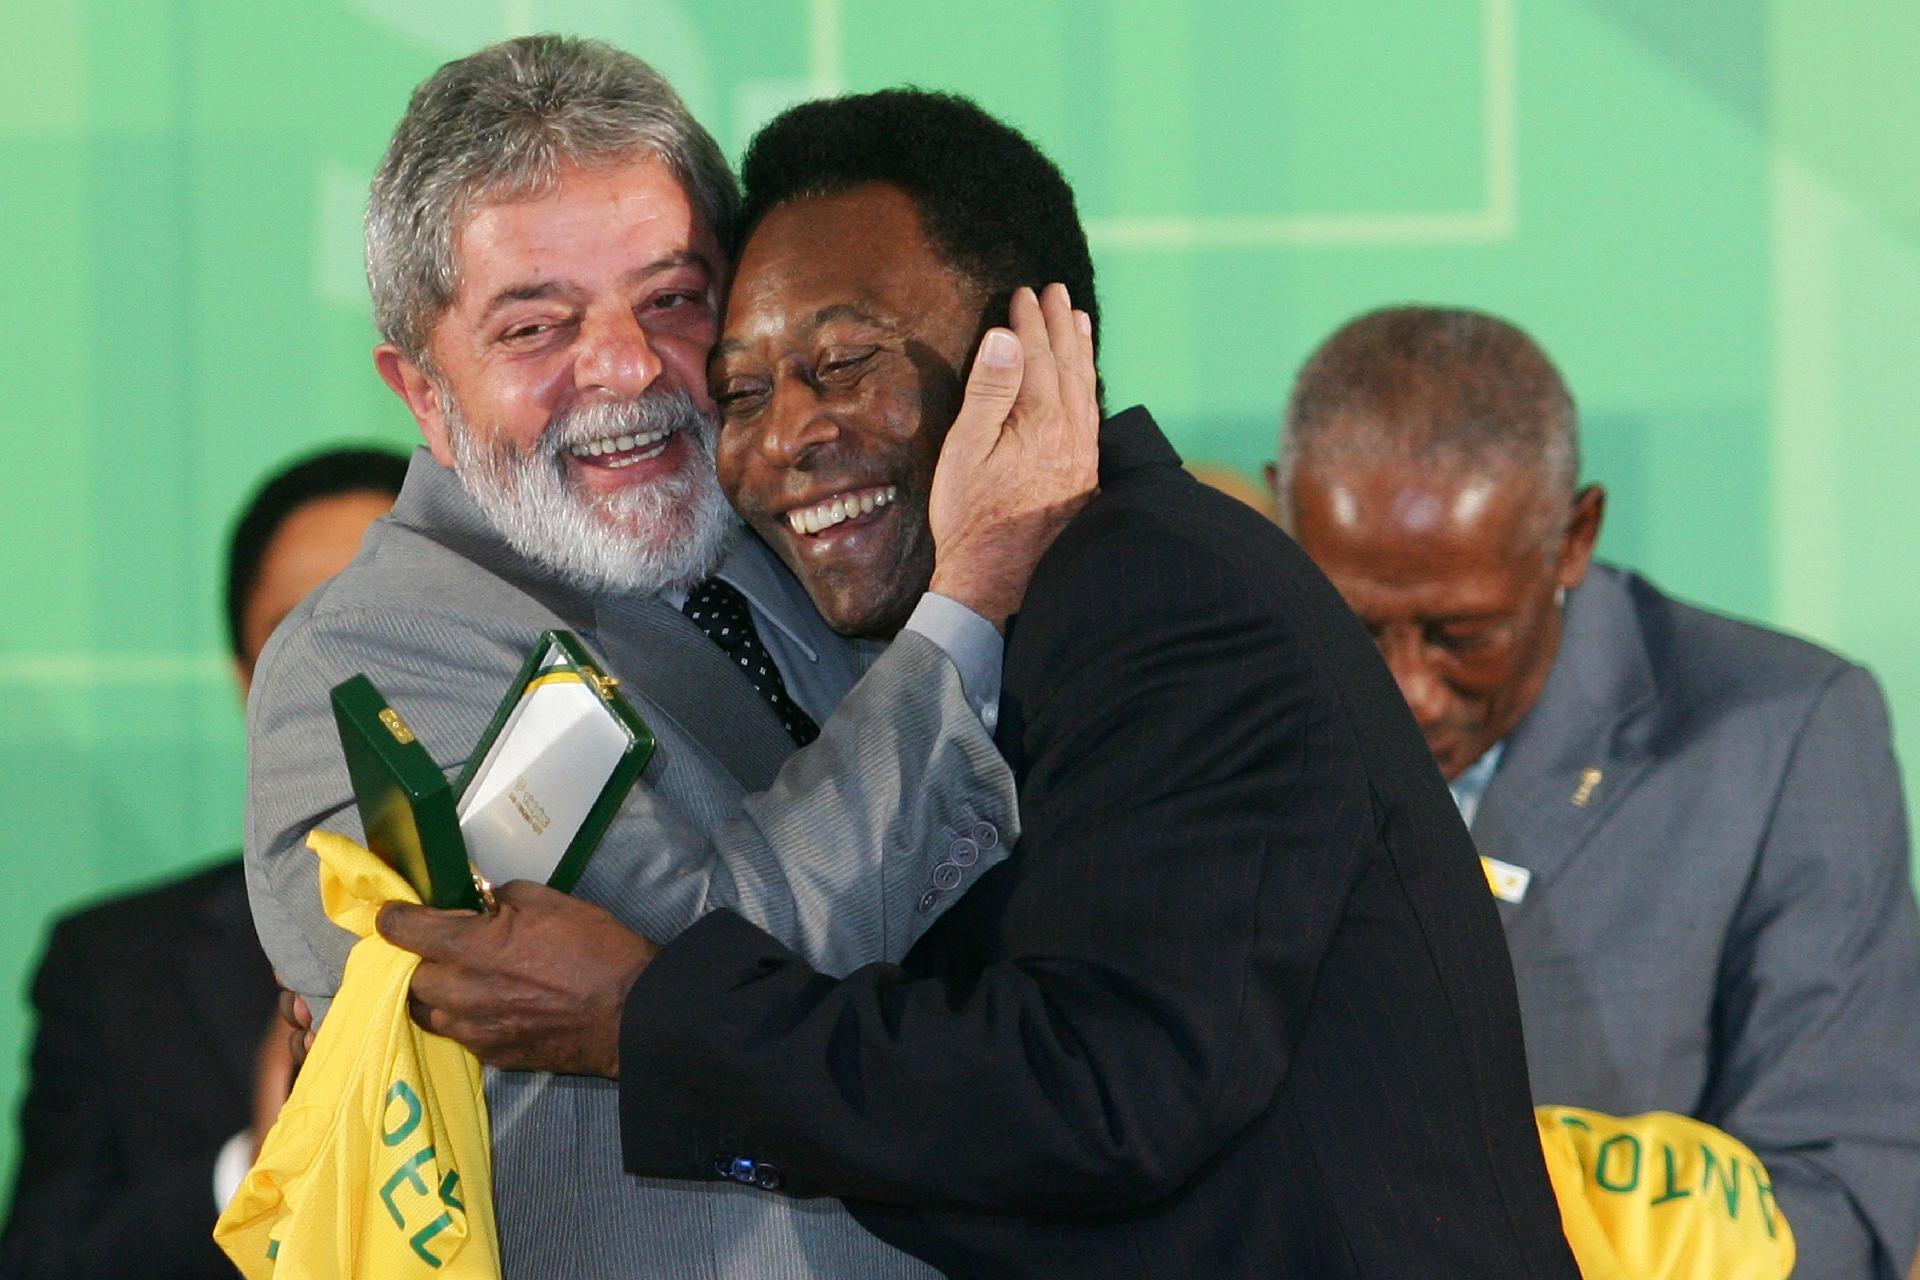 26.jun.2008 - O presidente Luiz Inácio Lula da Silva abraça o ex-jogador Pelé durante entrega de medalha aos heróis de 1958, pela comemoração dos 50 anos da conquista da Copa do Mundo de 1958 na Suécia, no salão leste do Palácio do Planalto, em Brasília - Dida Sampaio/Estadão Conteúdo